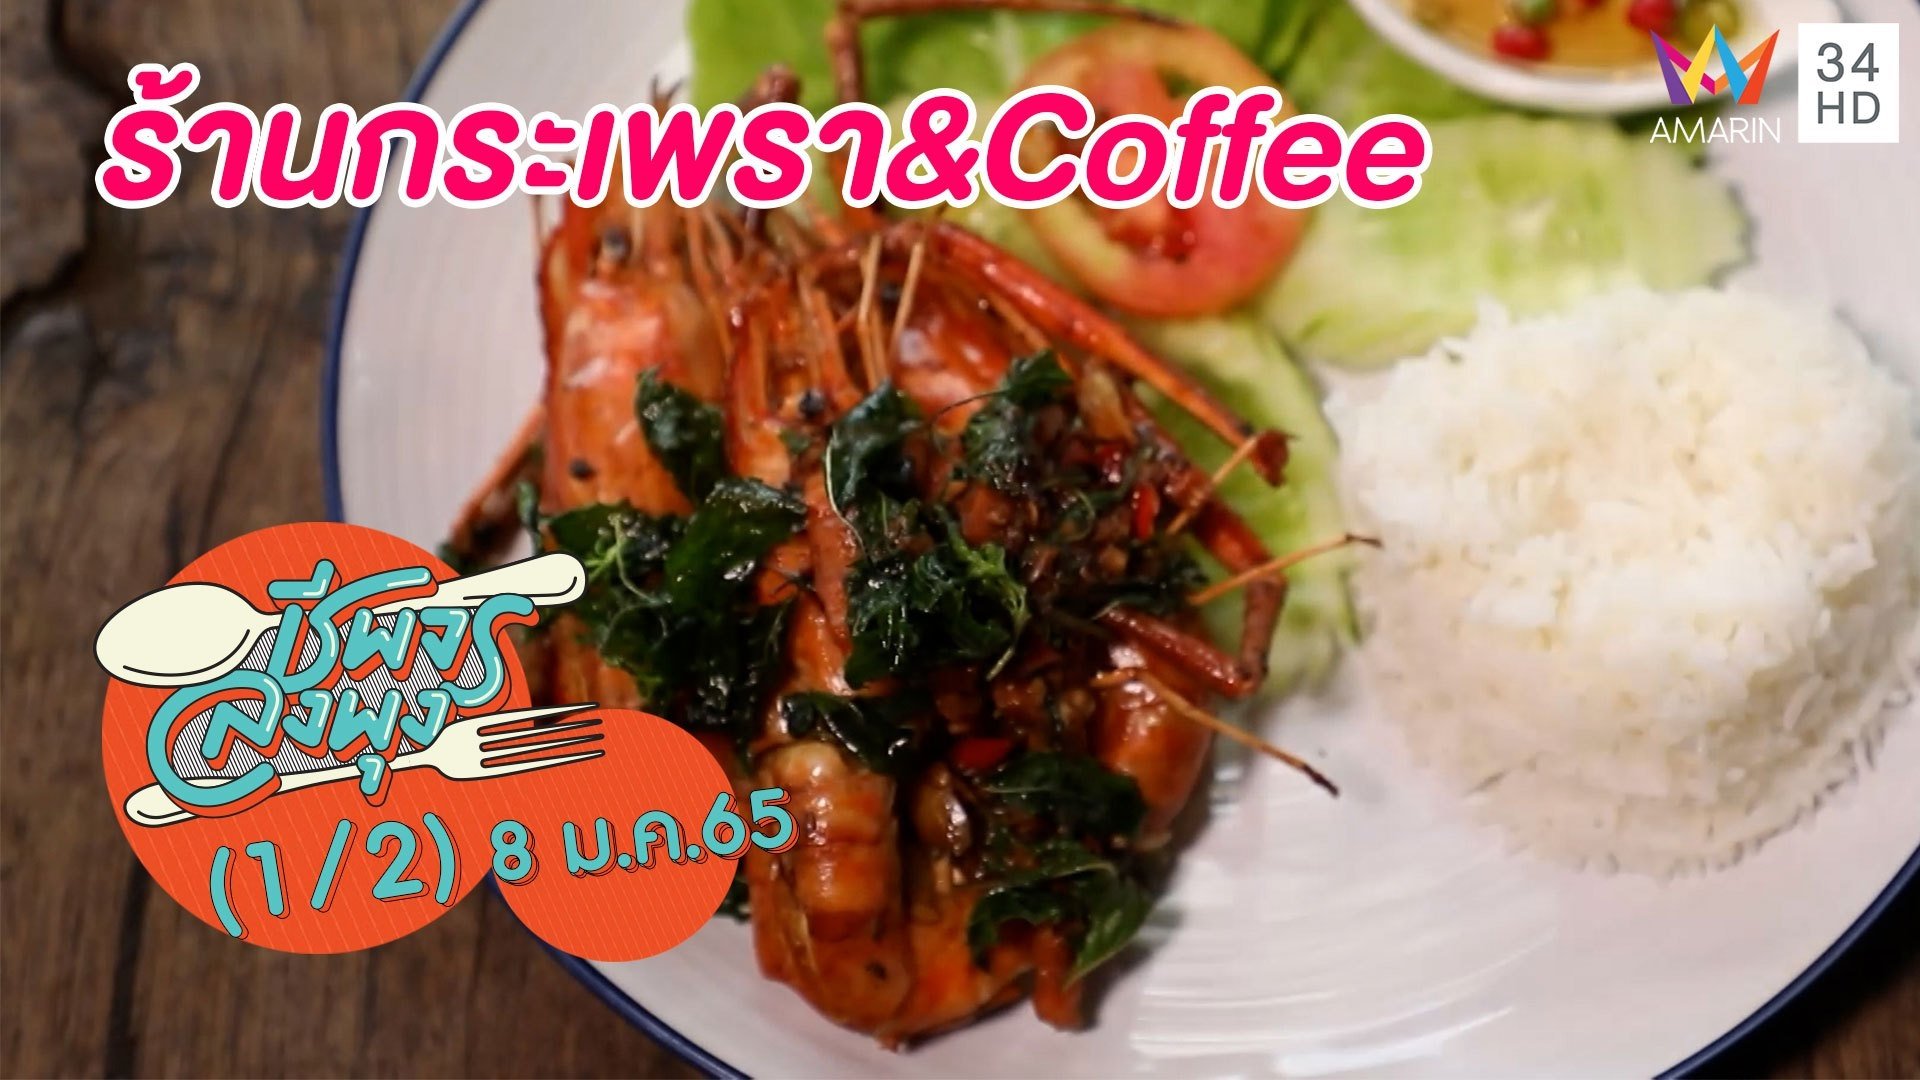 อาหารจานเดียวอร่อยล้นๆ @ร้านกระเพรา&Coffee | ชีพจรลงพุง | 8 ม.ค. 65 (1/2) | AMARIN TVHD34